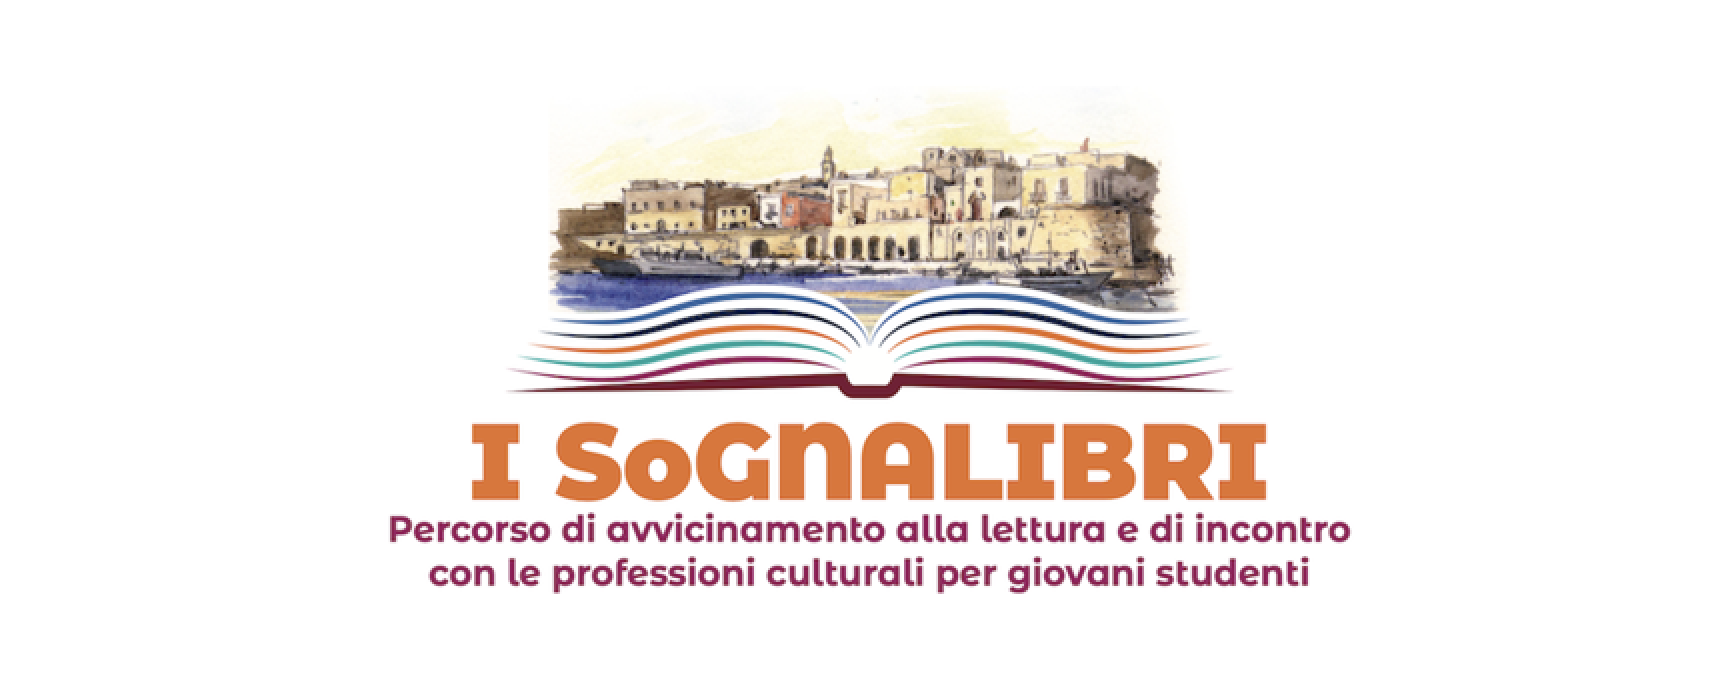 Libri nel Borgo Antico: i ragazzi del progetto “SoGNALIBRI” protagonisti del festival